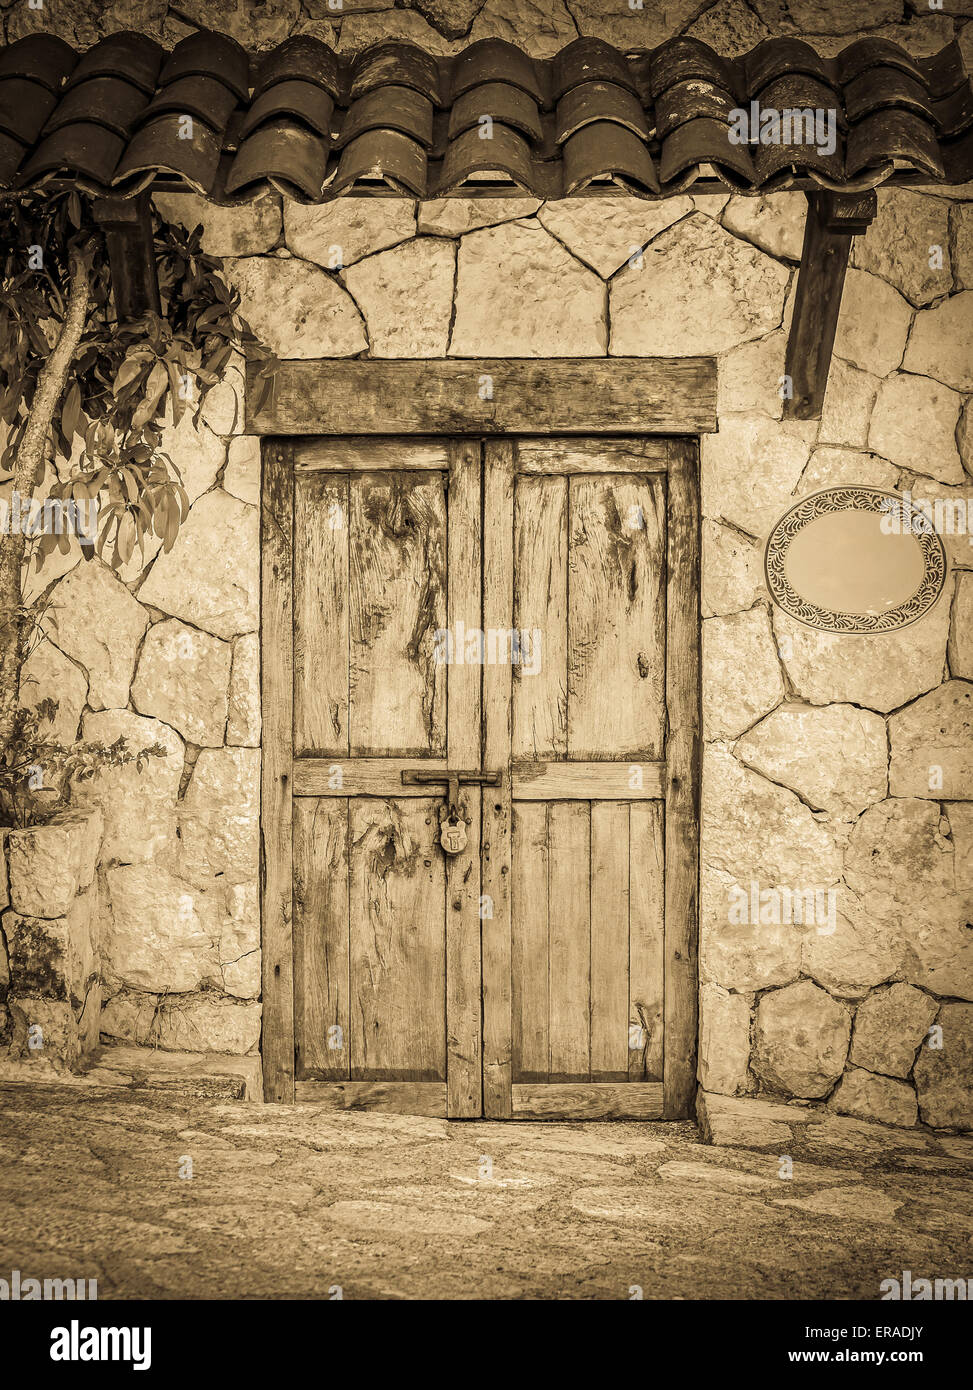 Vintage-Stil alten koloniale Türen des mexikanischen Hacienda gesperrt Stockfoto